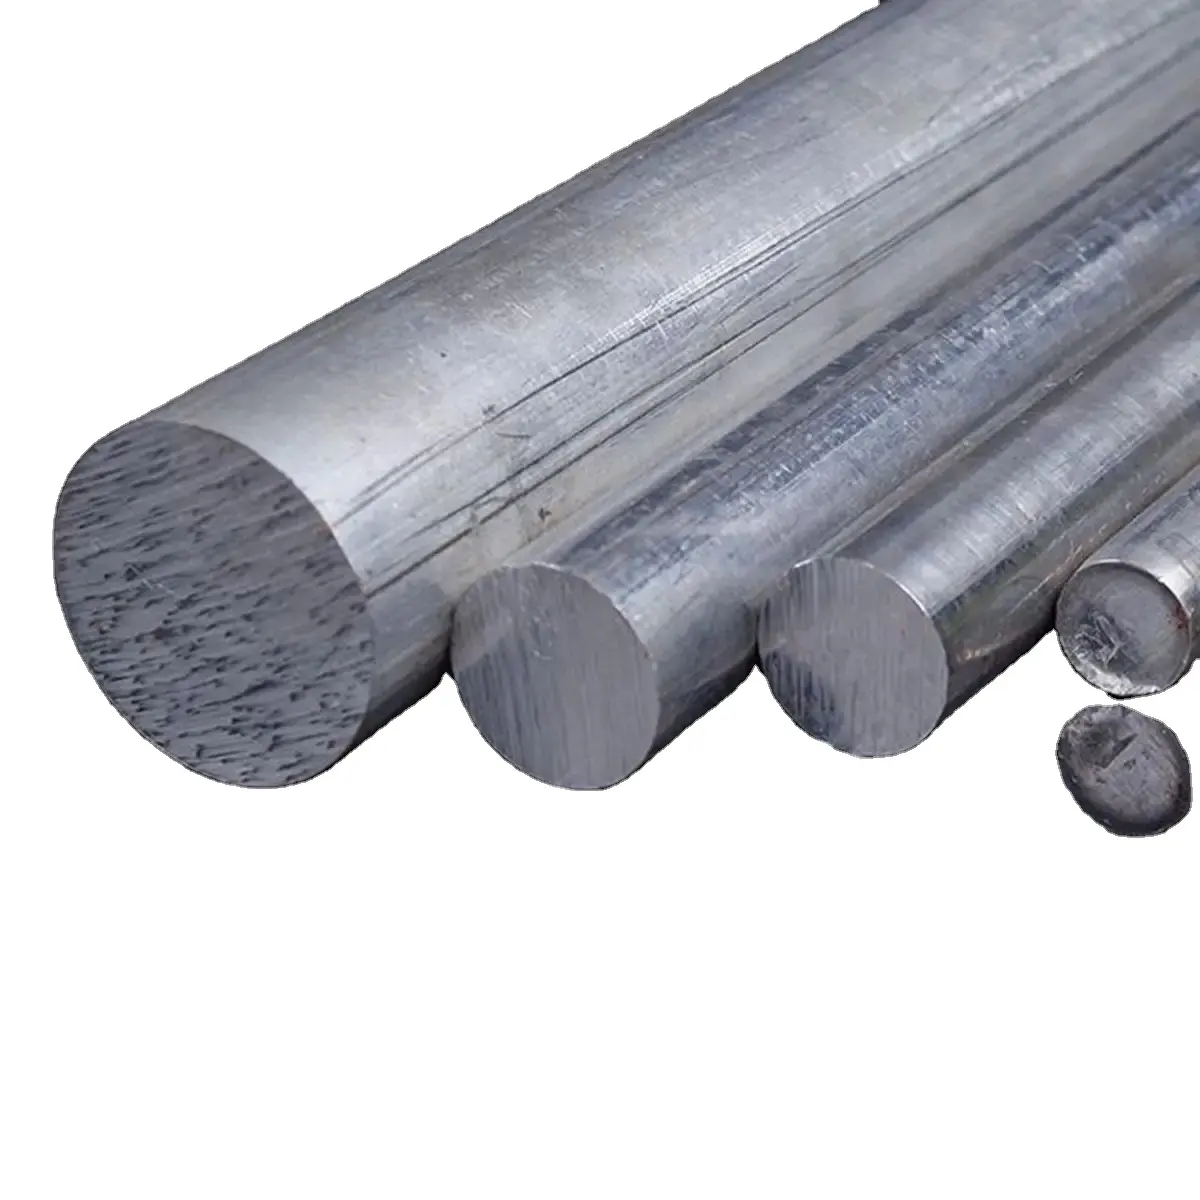 Ukuran 2024 5052 5083 6061 6082 7075 Aluminio Bar bulat/harga batang aluminium